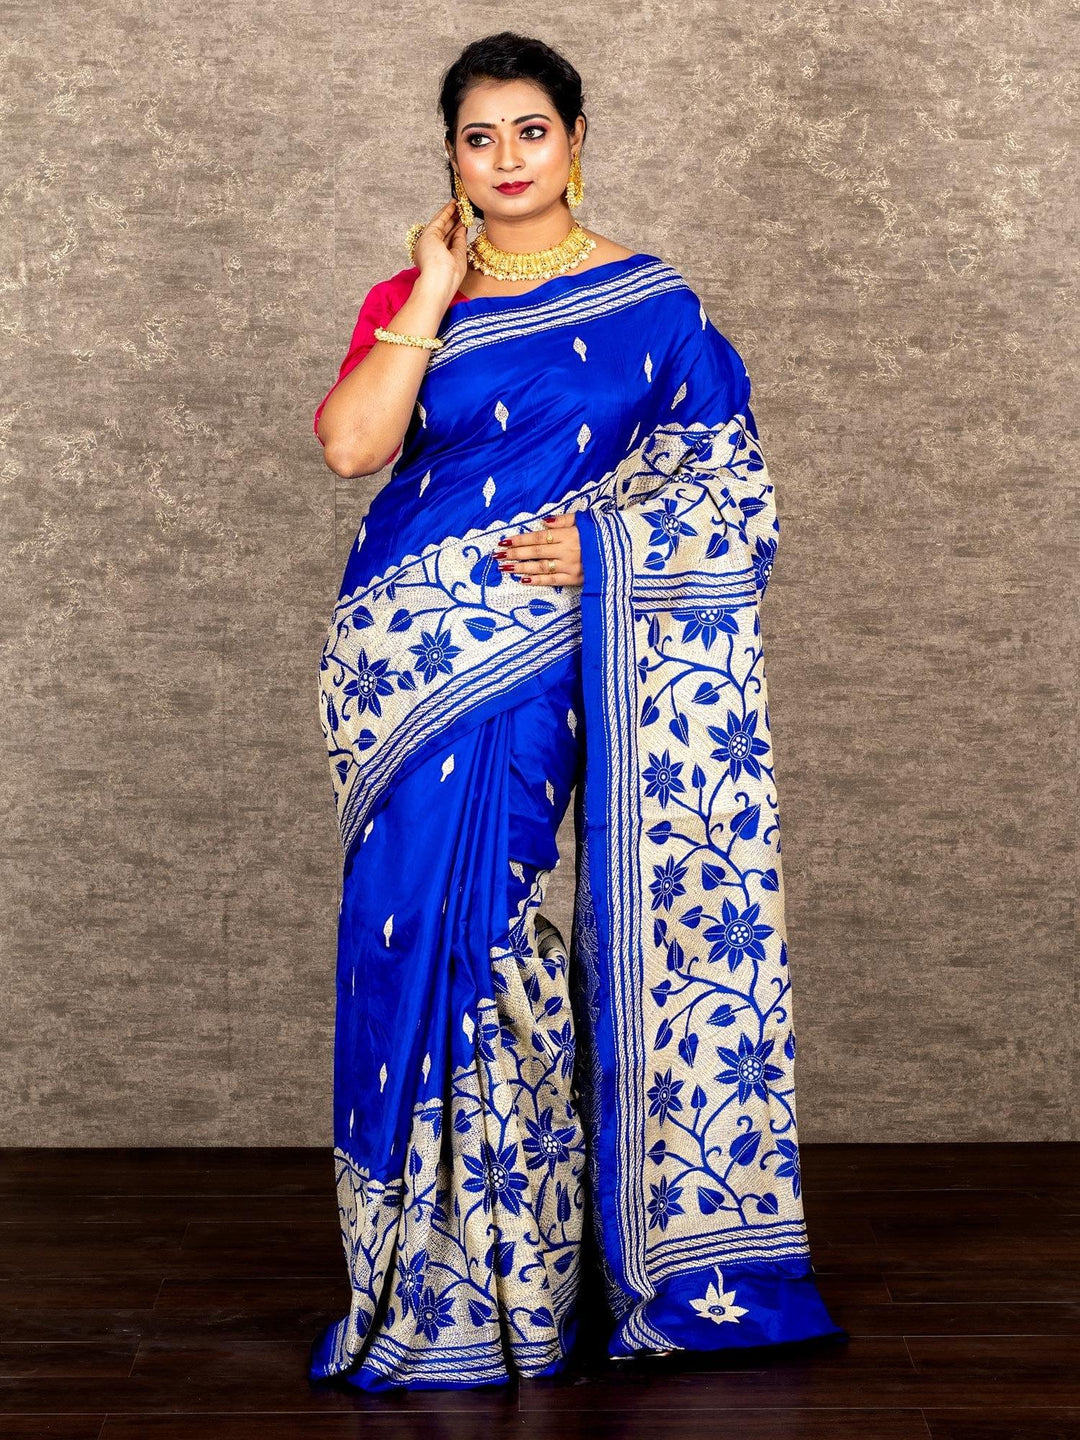 Wonderful Royal Blue Reverse Kantha Stitch Bangalore Silk Saree - WeaversIndia